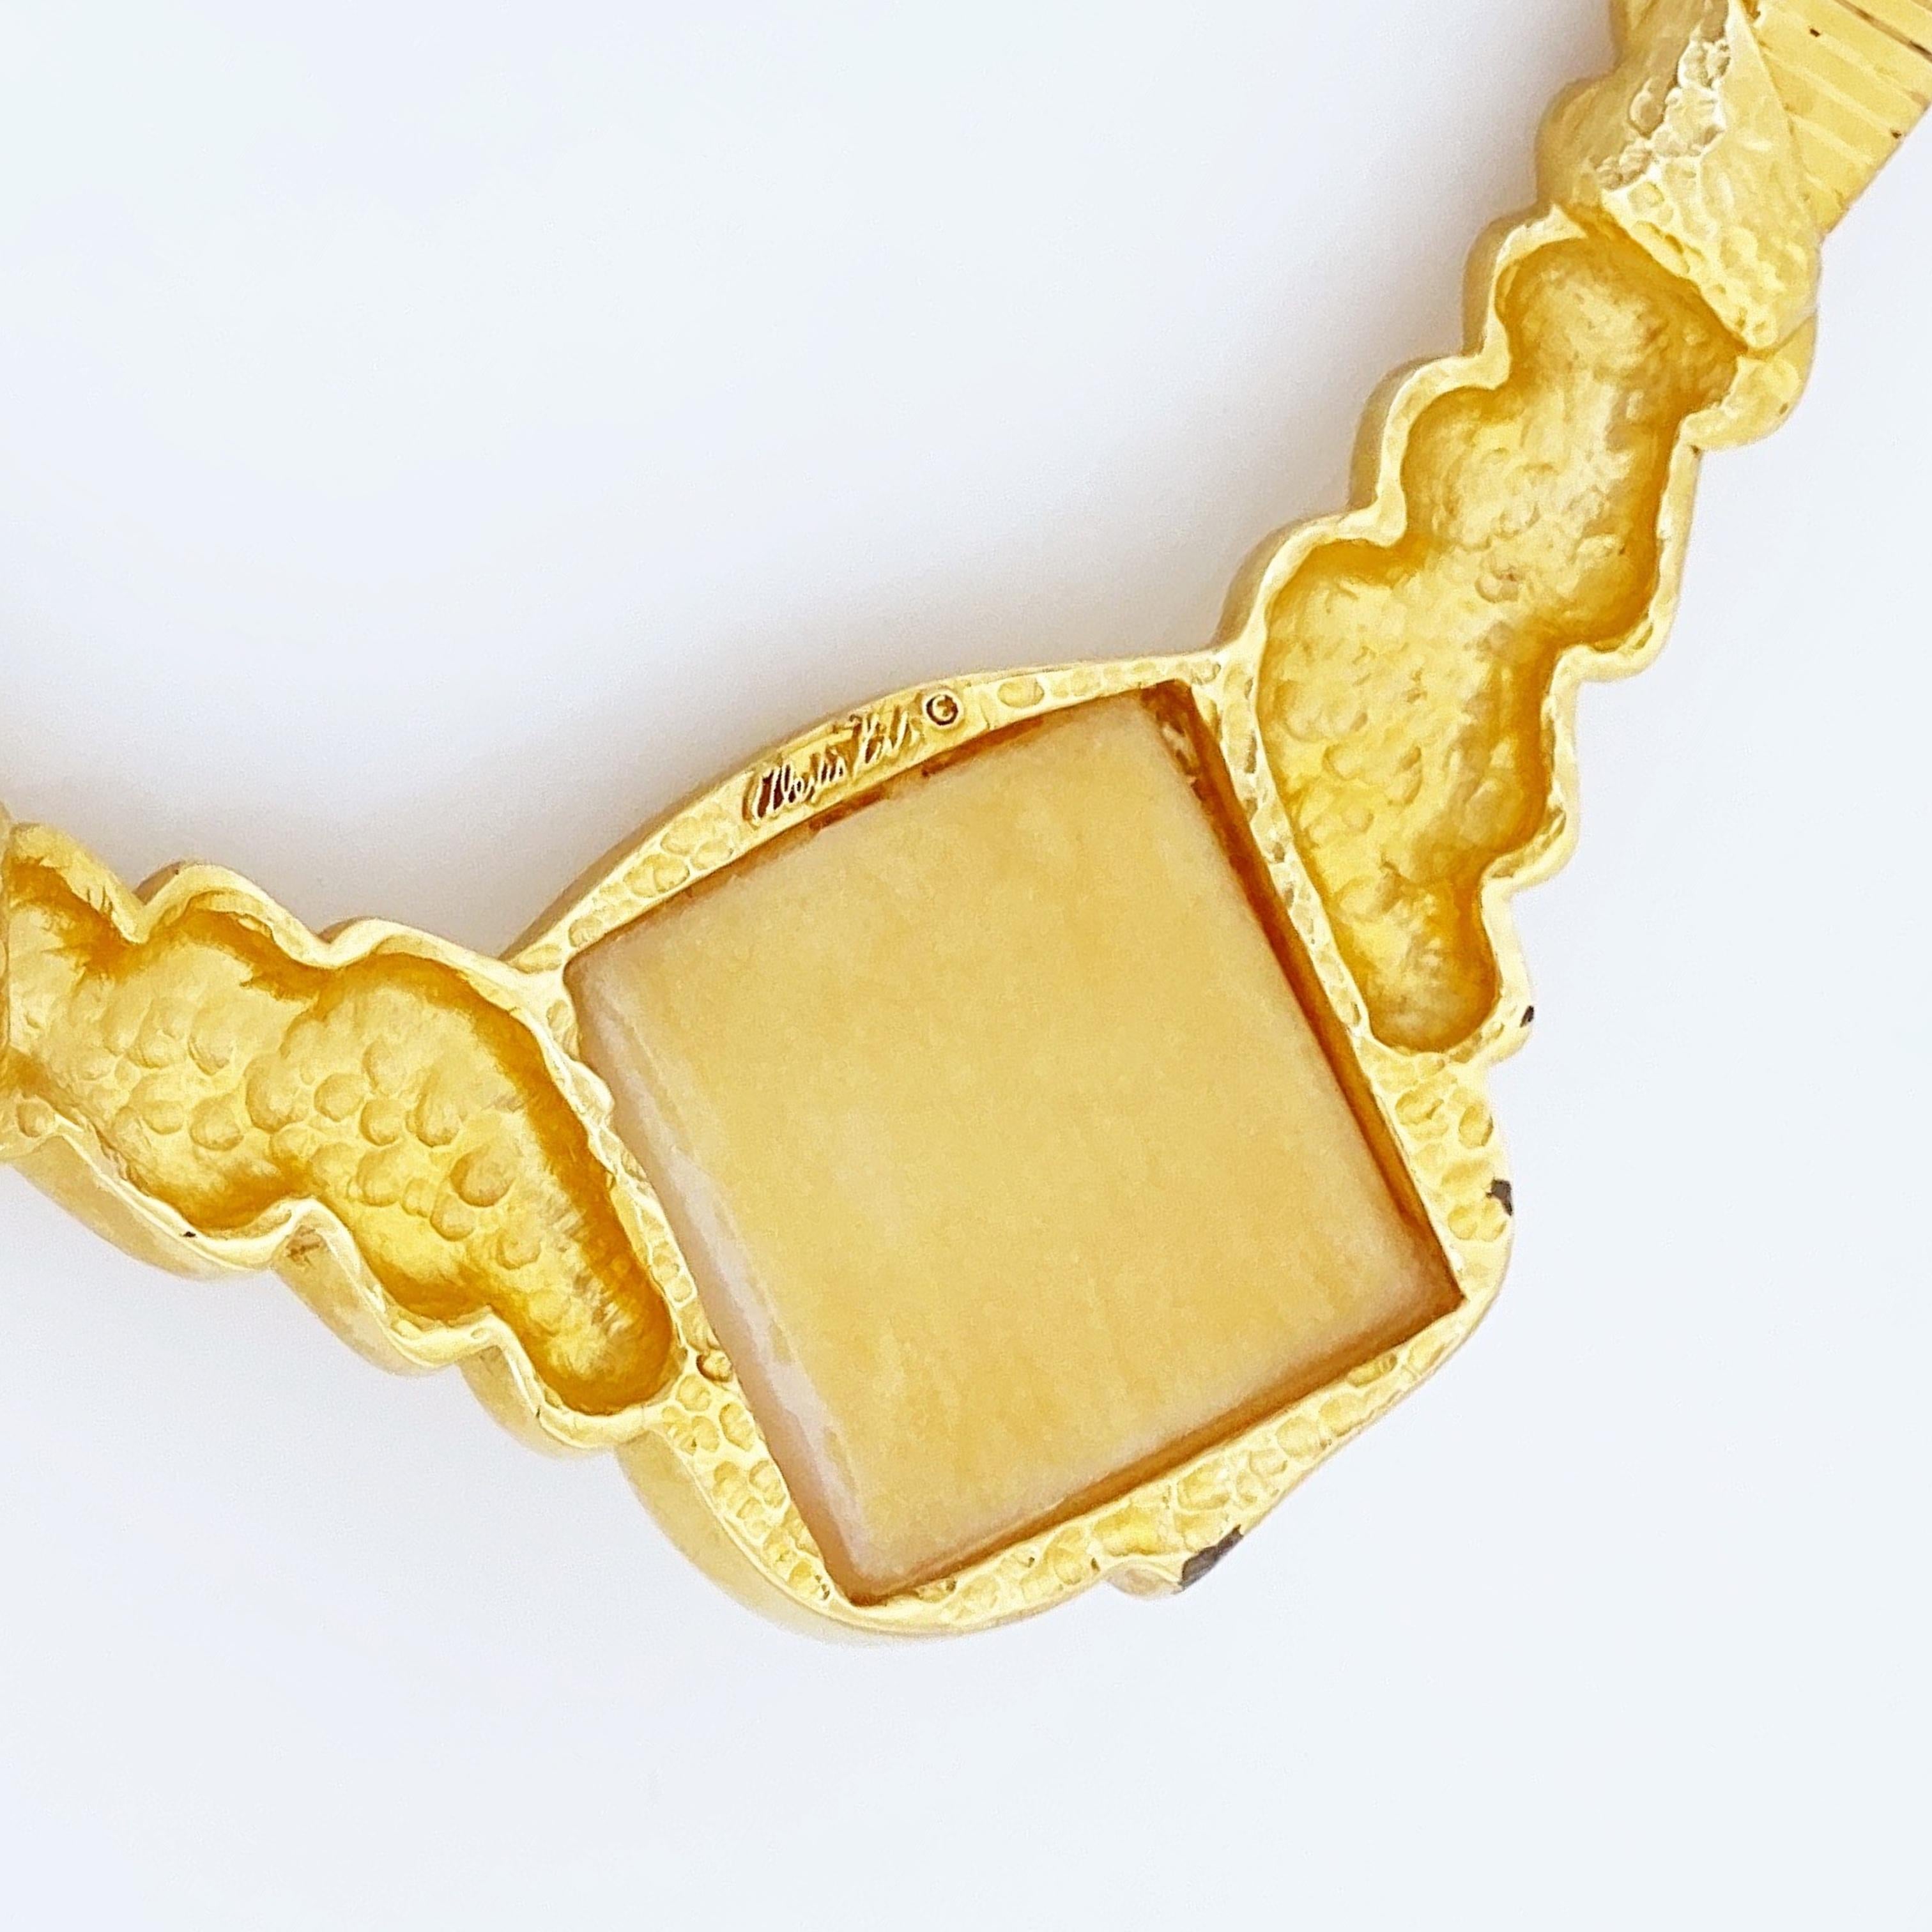 rose gold omega necklace